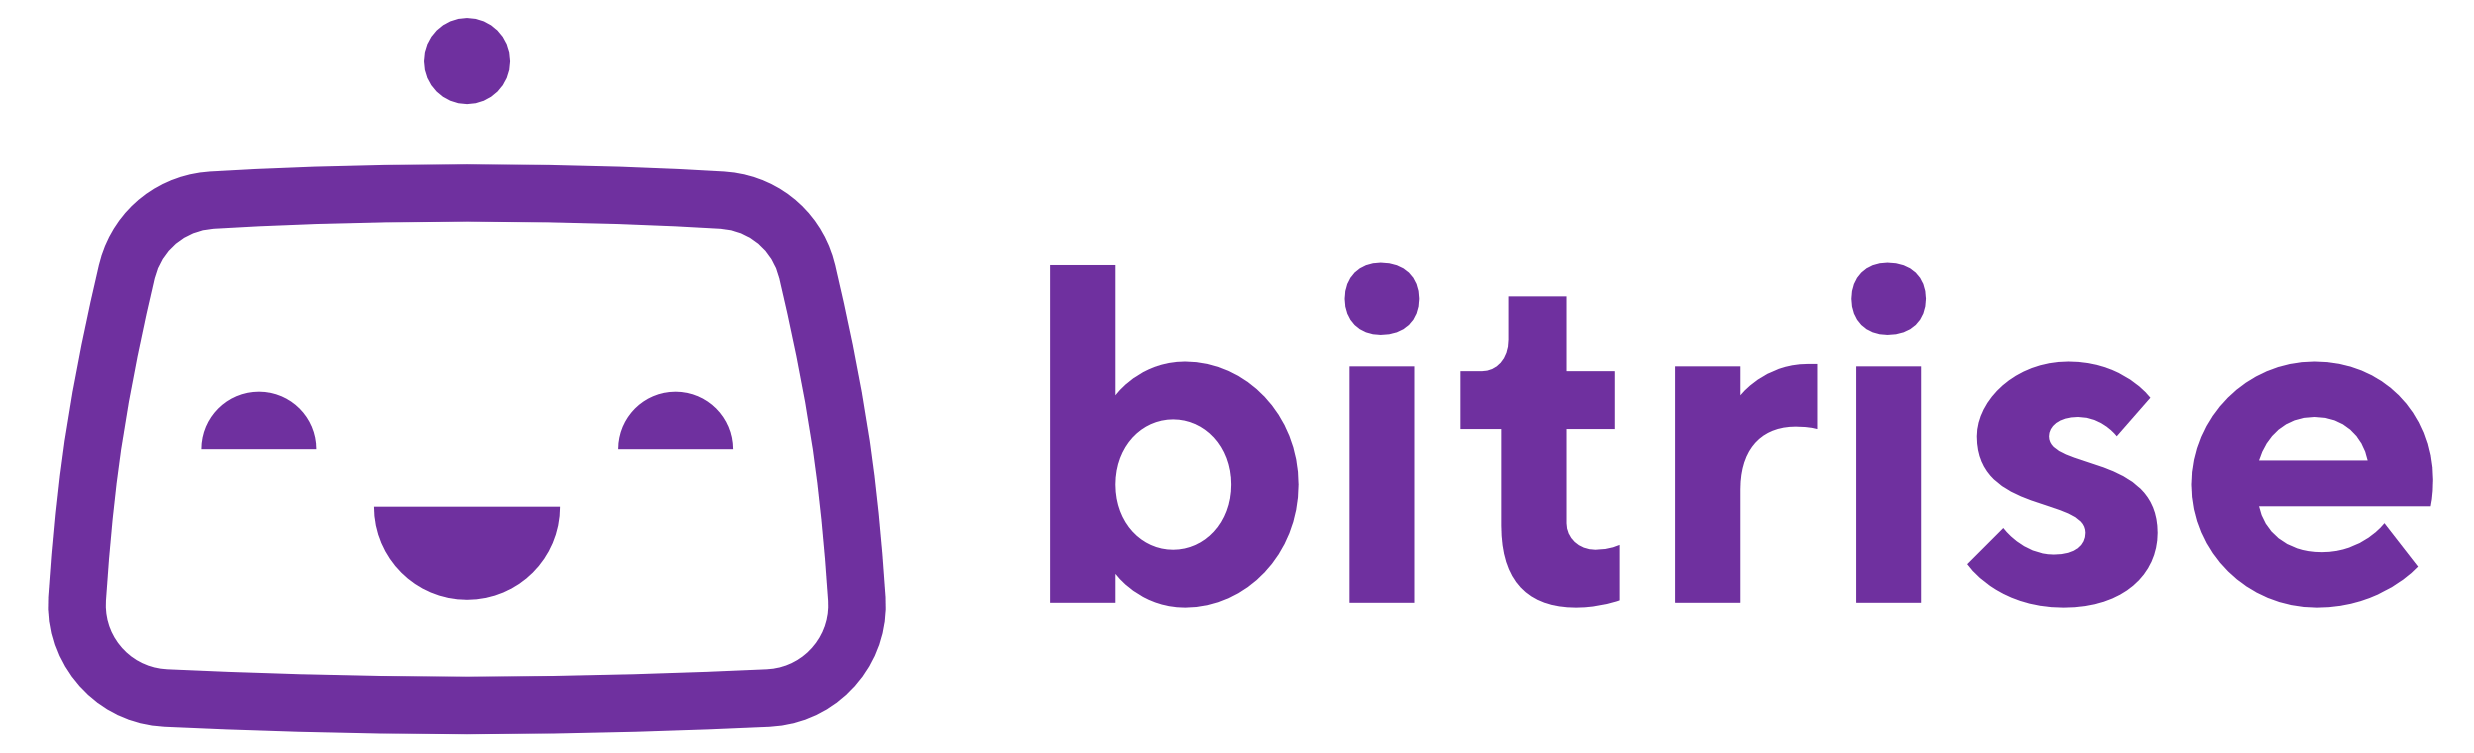 Bitrise logo